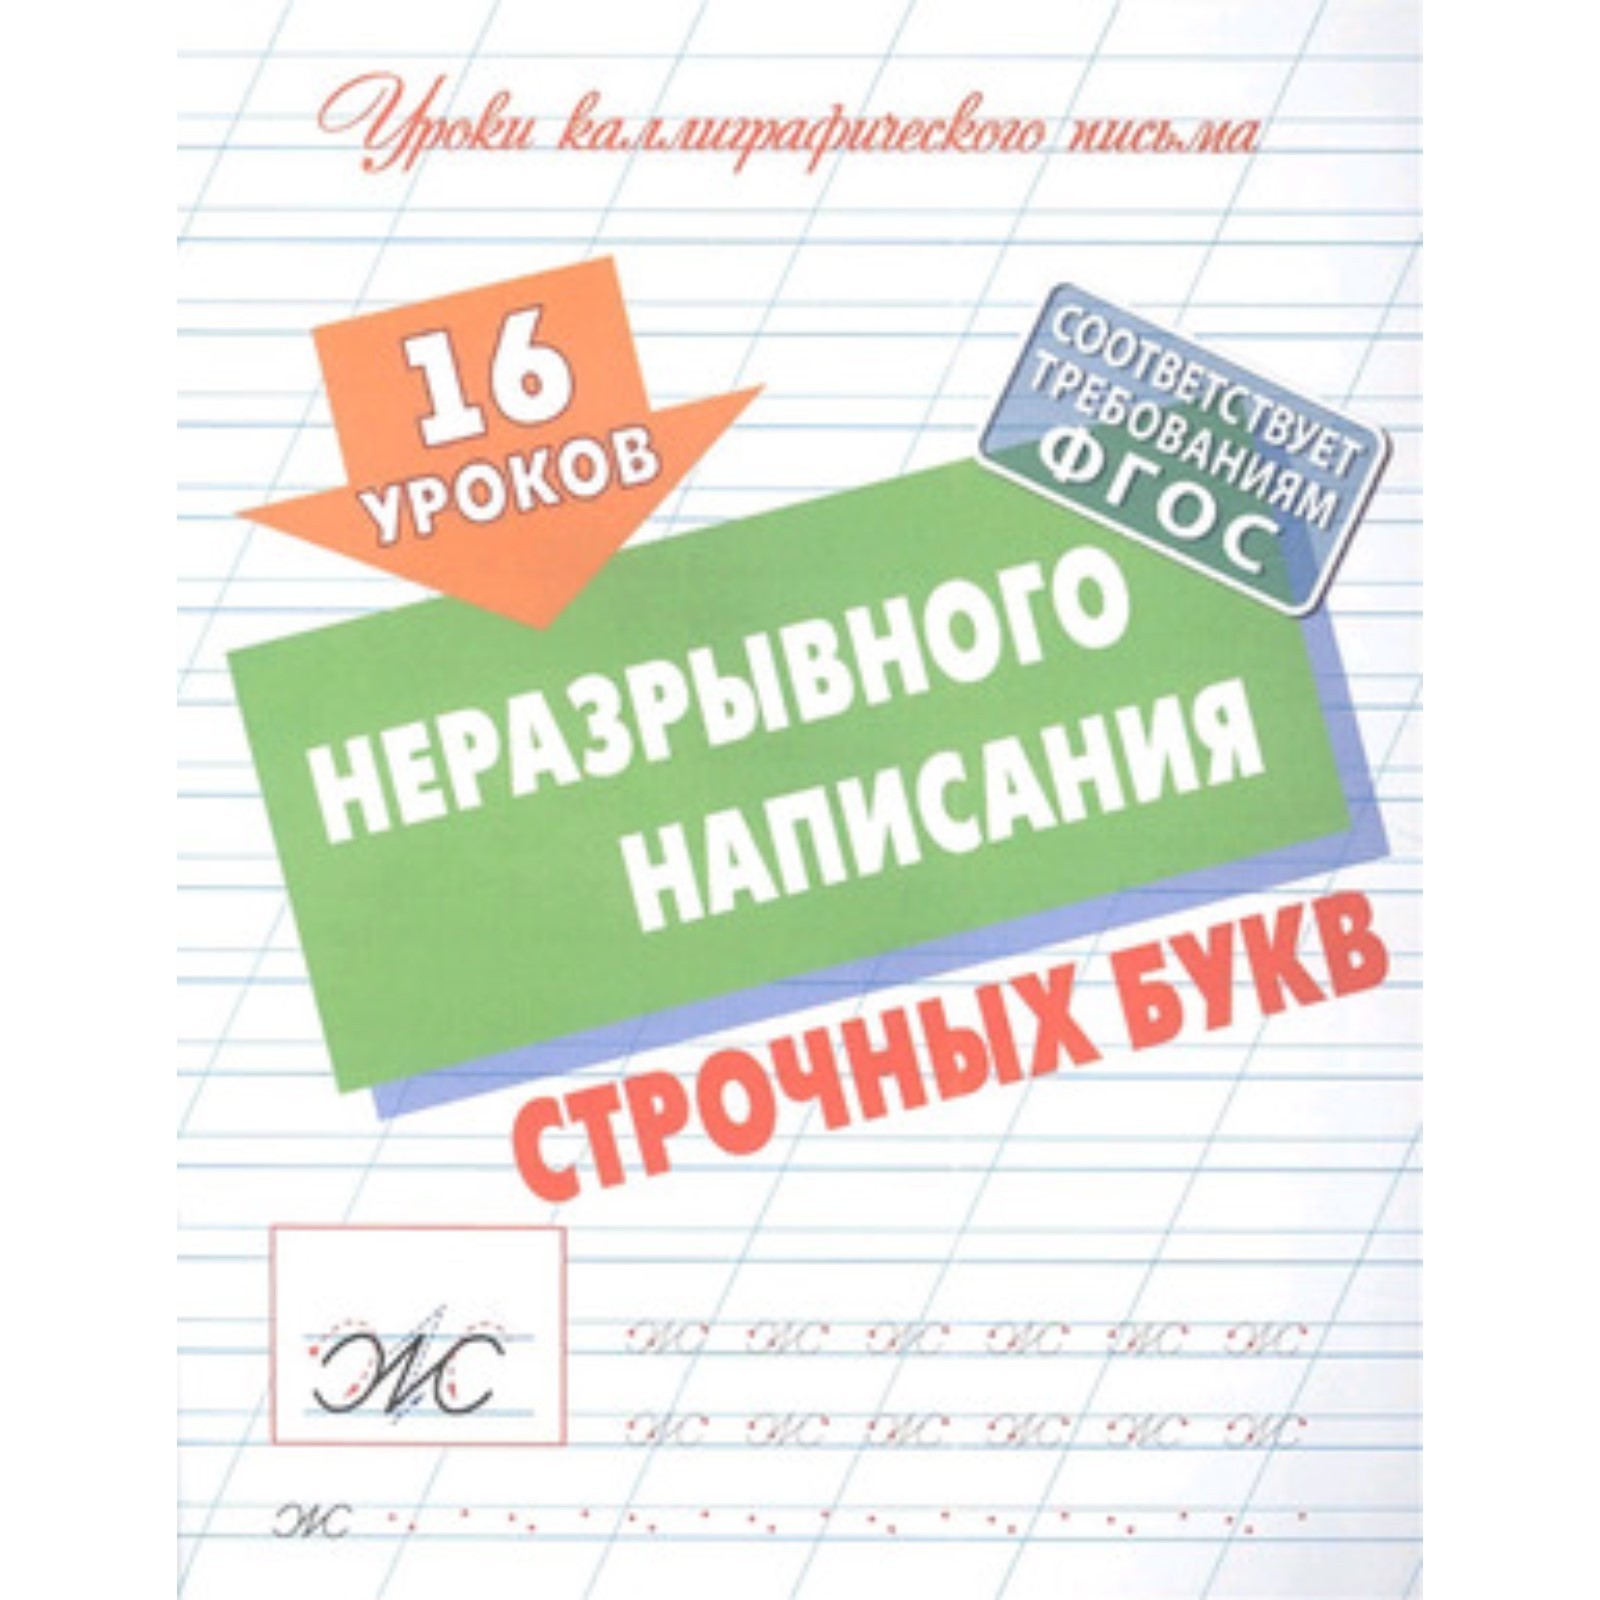 16 уроков неразрывного написания строчных букв Уроки каллиграфического письма С.В.Петренко